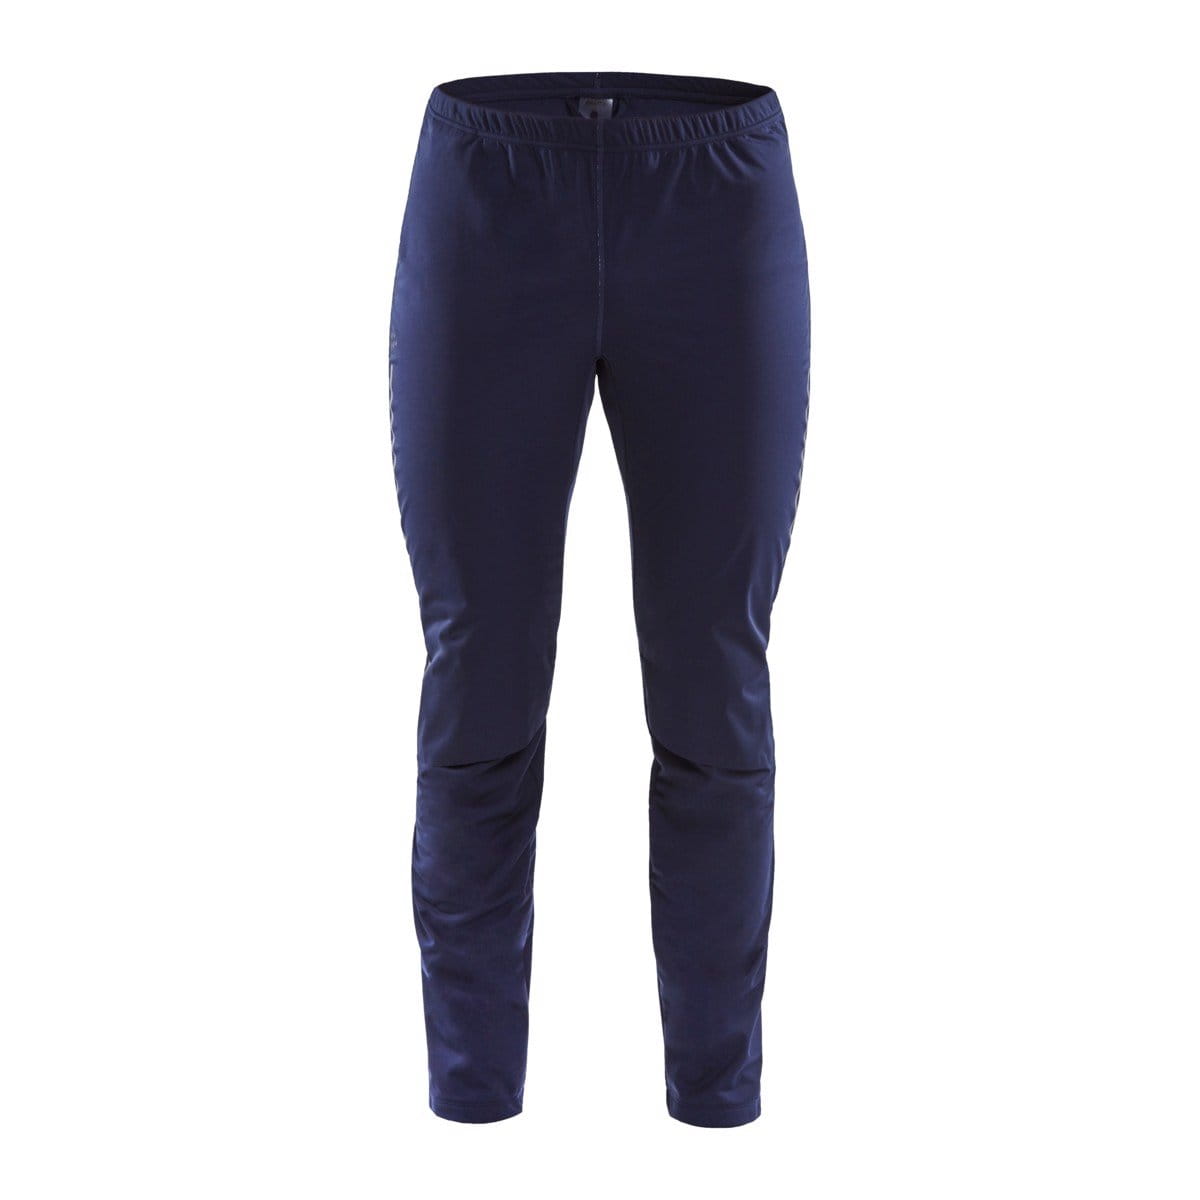 Pánské běžecké kalhoty Craft Kalhoty Storm Balance Tights tmavě modrá